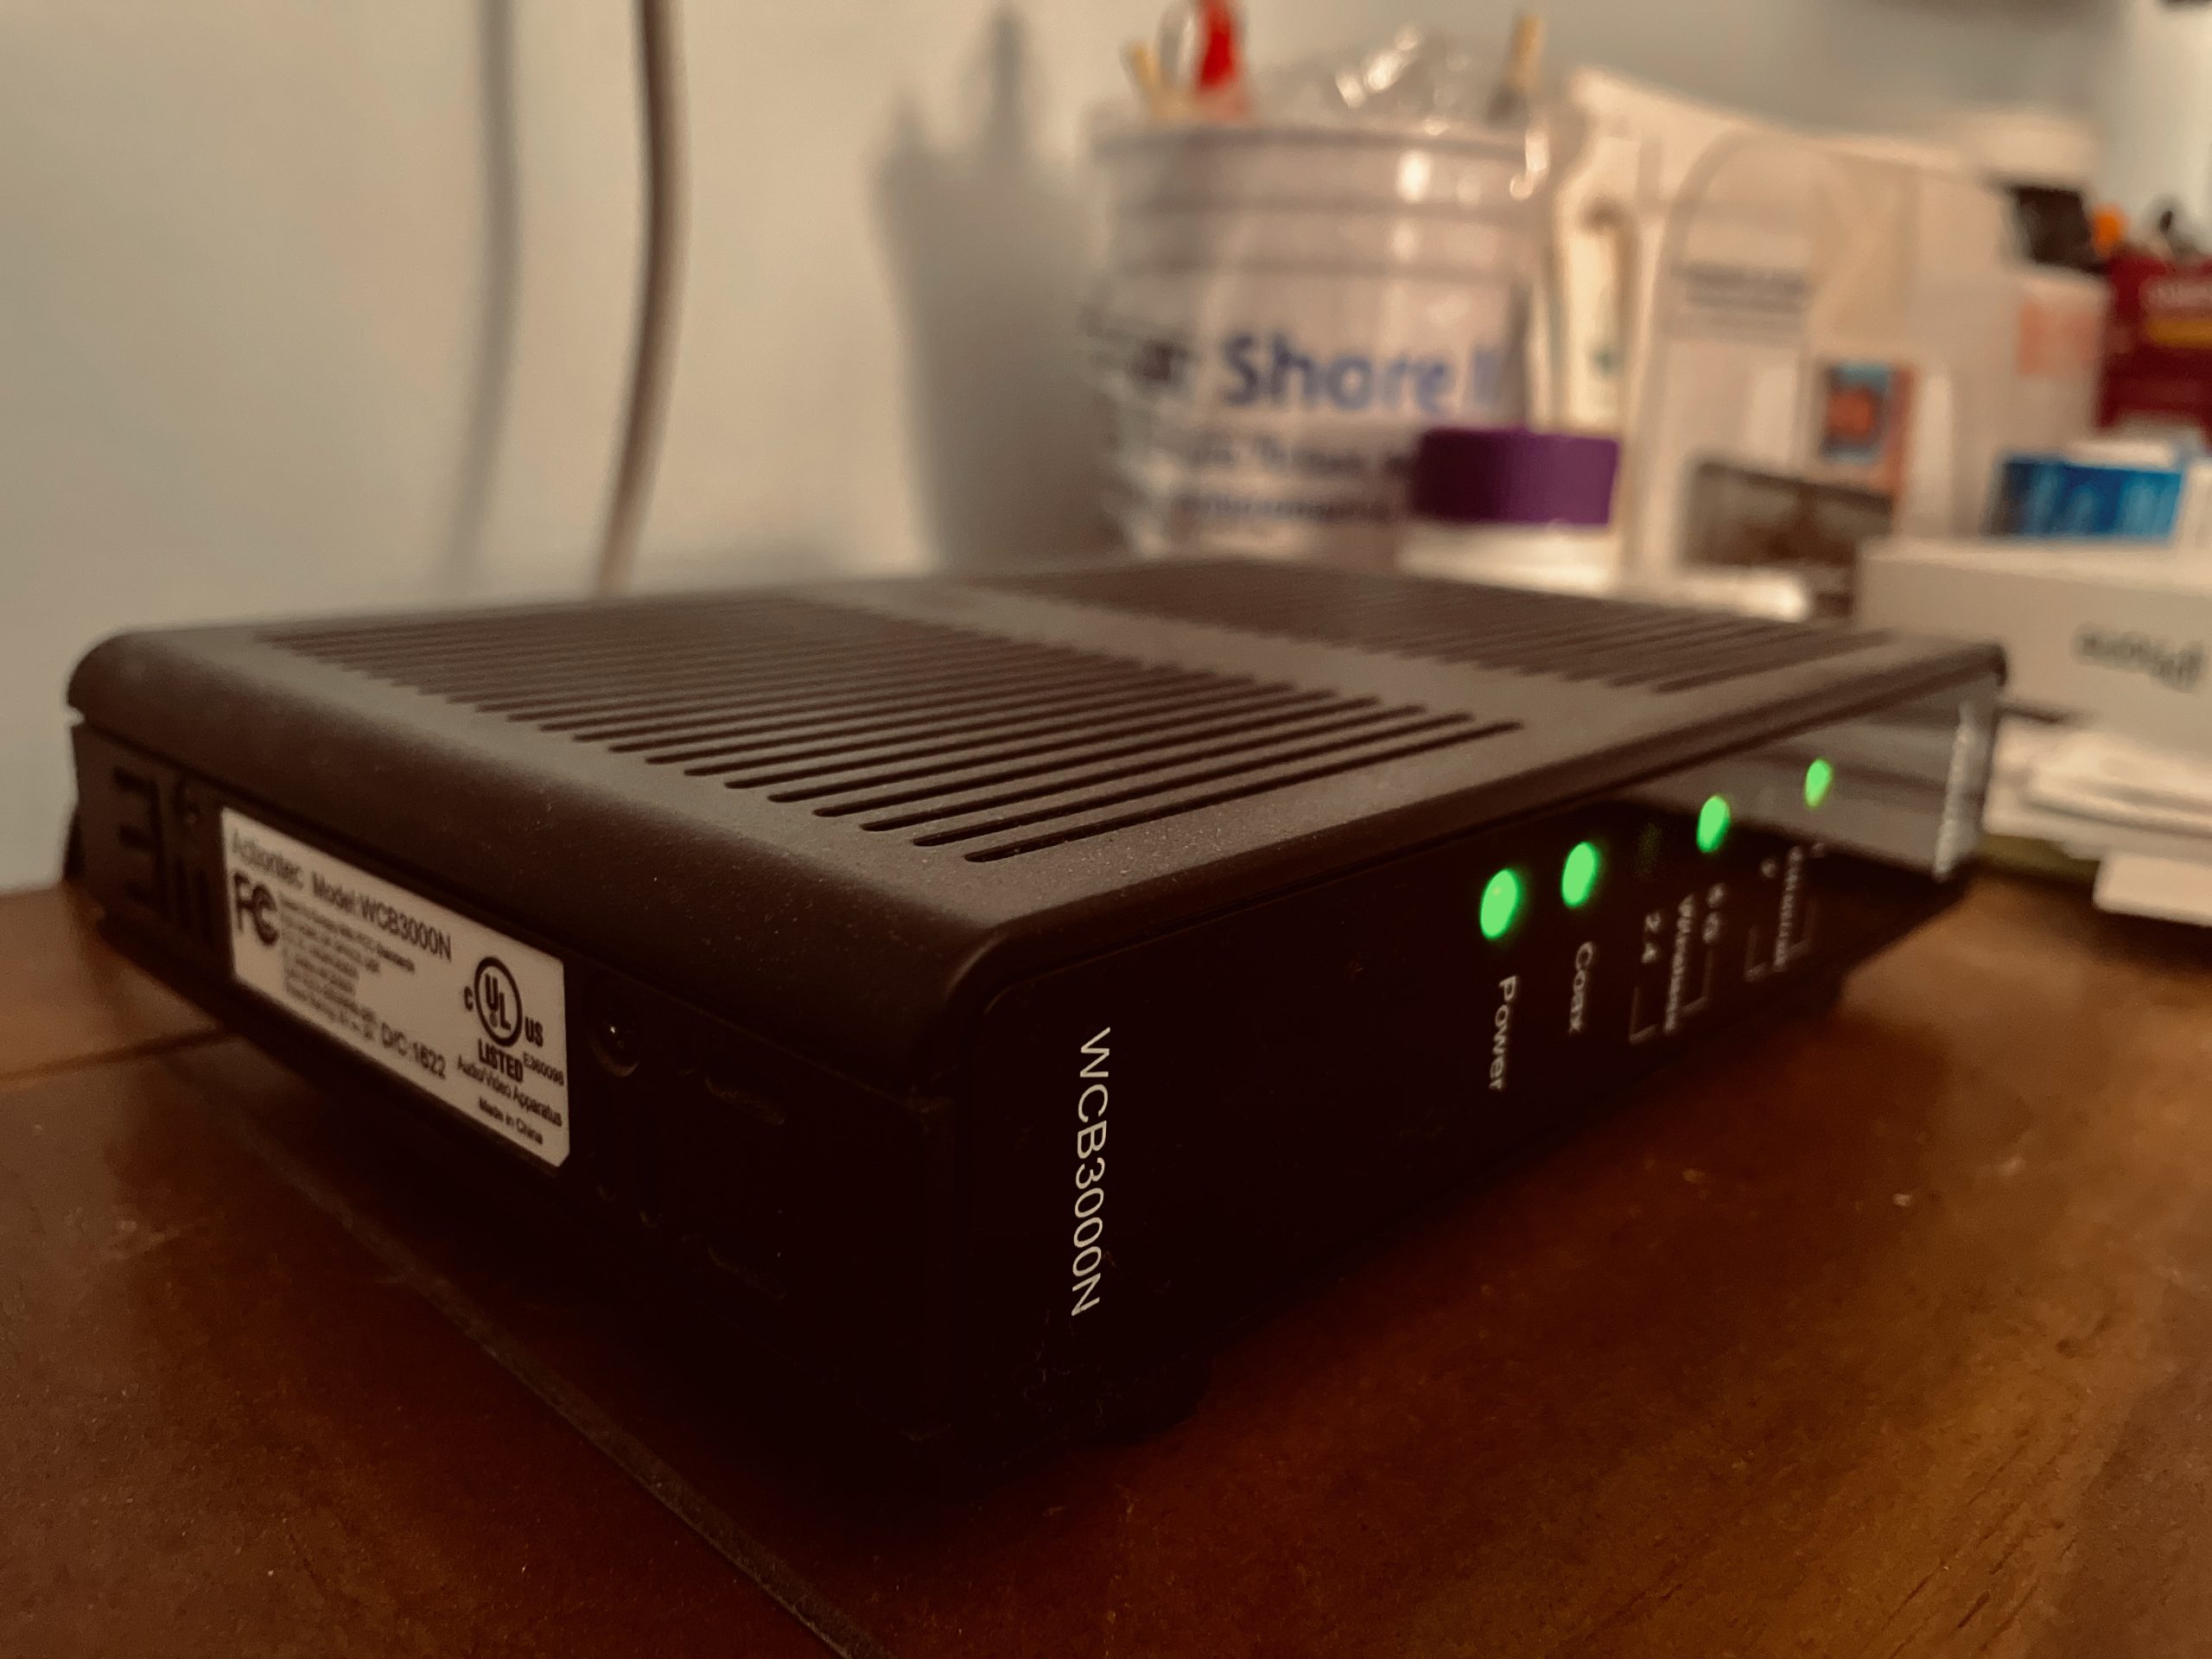 Cable modem/router. (Photo: Daniel Nee)